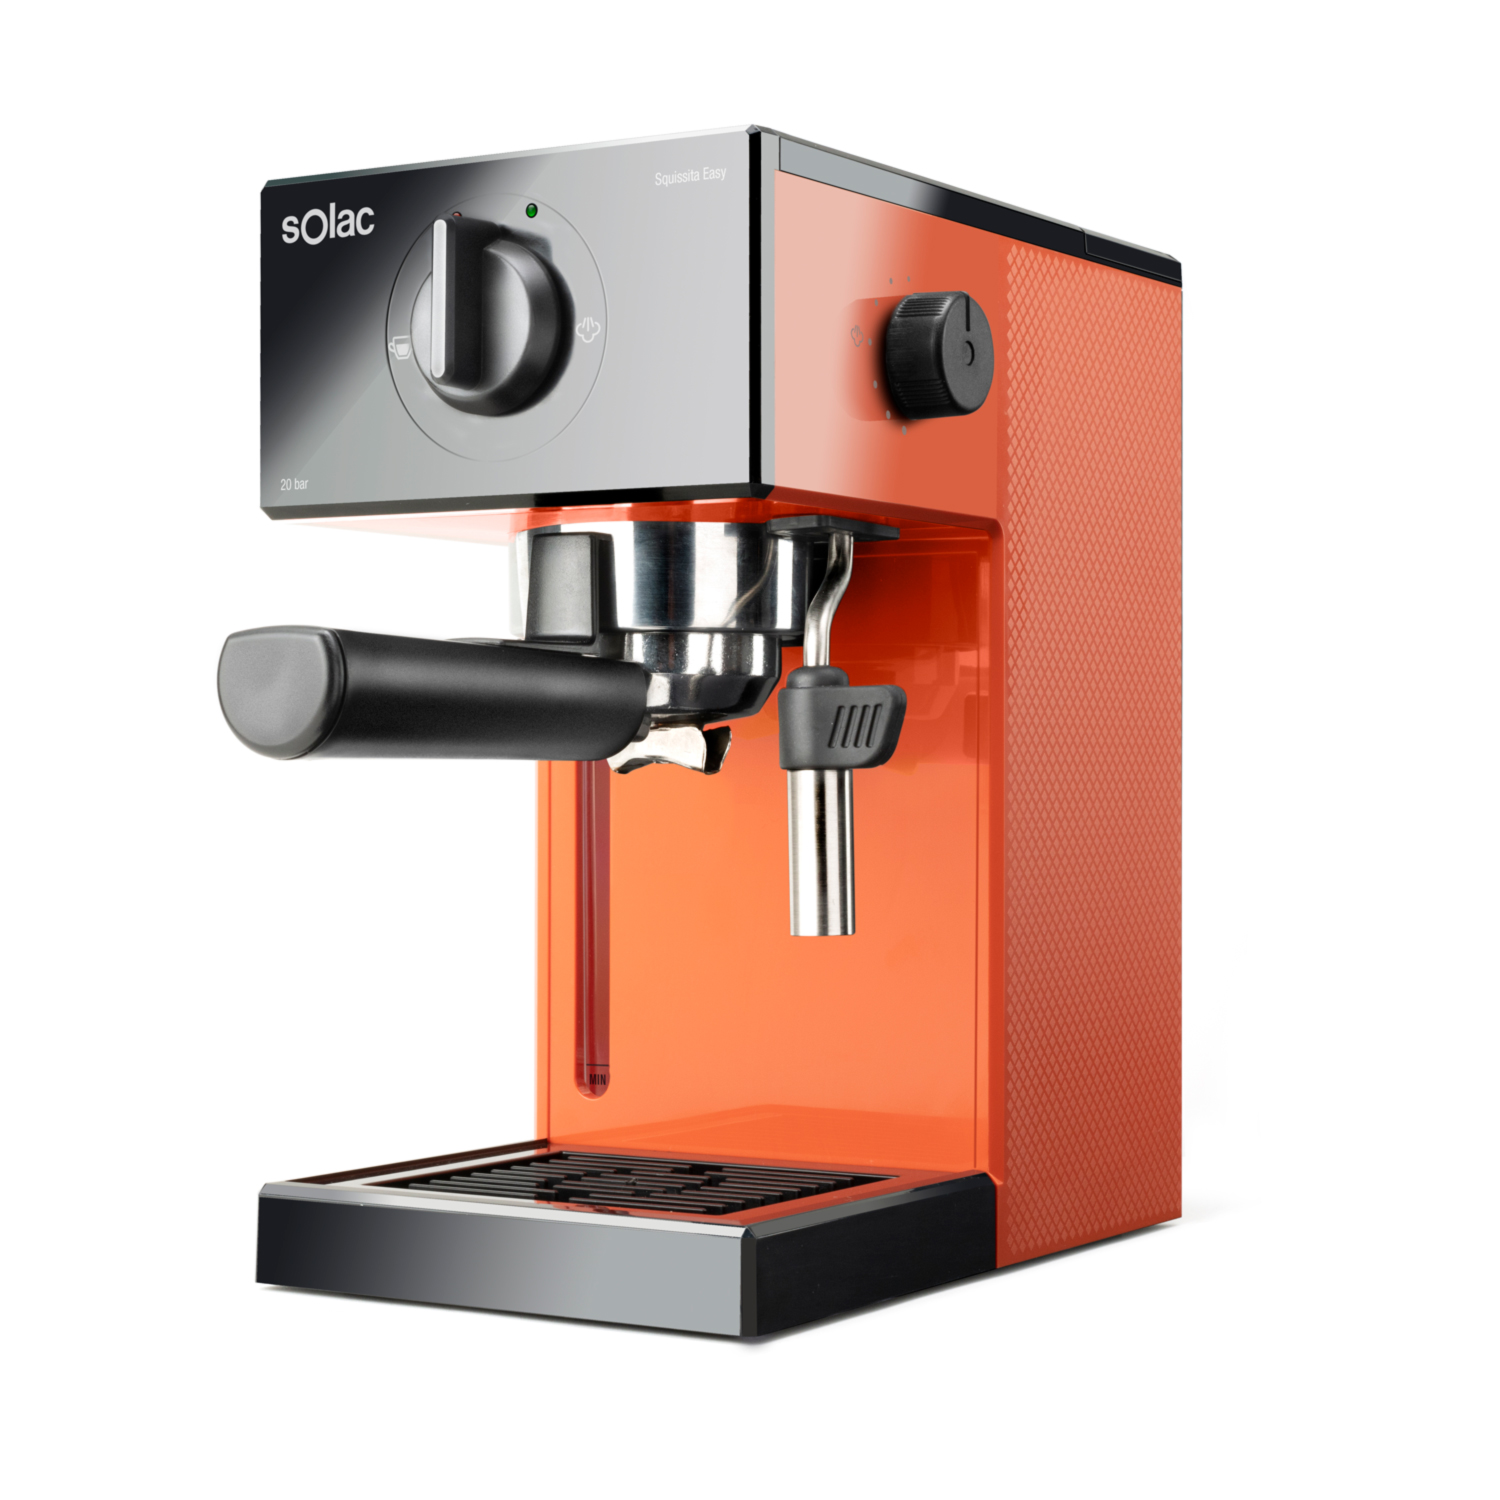 Cafetera Espresso Solac squissita easy orange ce4503 20bar molido monodosis capacidad 15l vaporizador. 20 1050w cecotec squisita ivory naranja express s92011700 1050 1.5 2